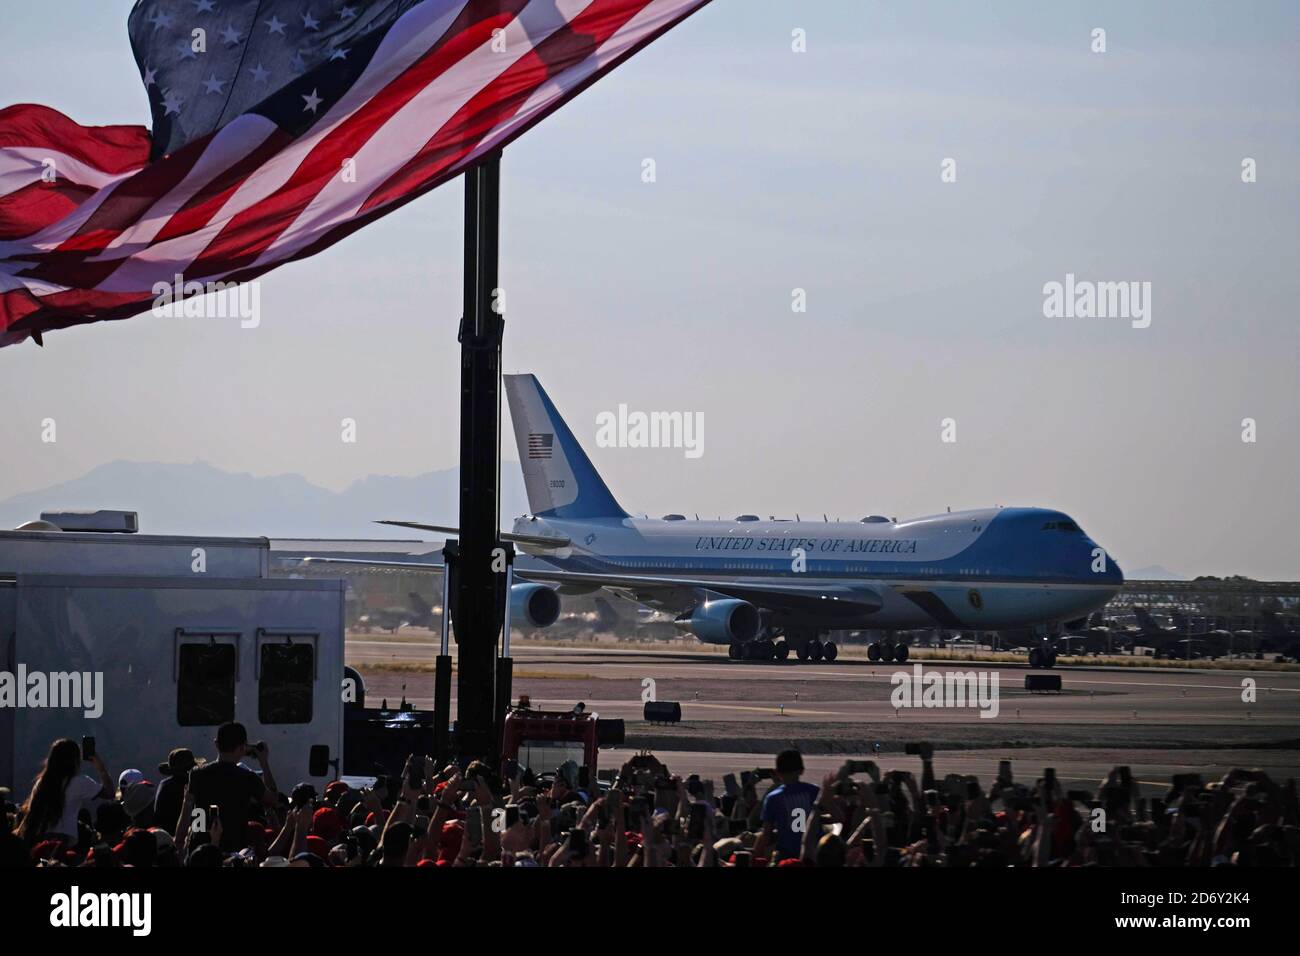 Tucson, Arizona, USA. Oktober 2020. Präsident Donald Trump hält Wahlkampfkundgebung am Flughafen Tucson zwei Wochen vor der Wahl 2020 ab. Air Force One Landung. Quelle: Christopher Brown/ZUMA Wire/Alamy Live News Stockfoto